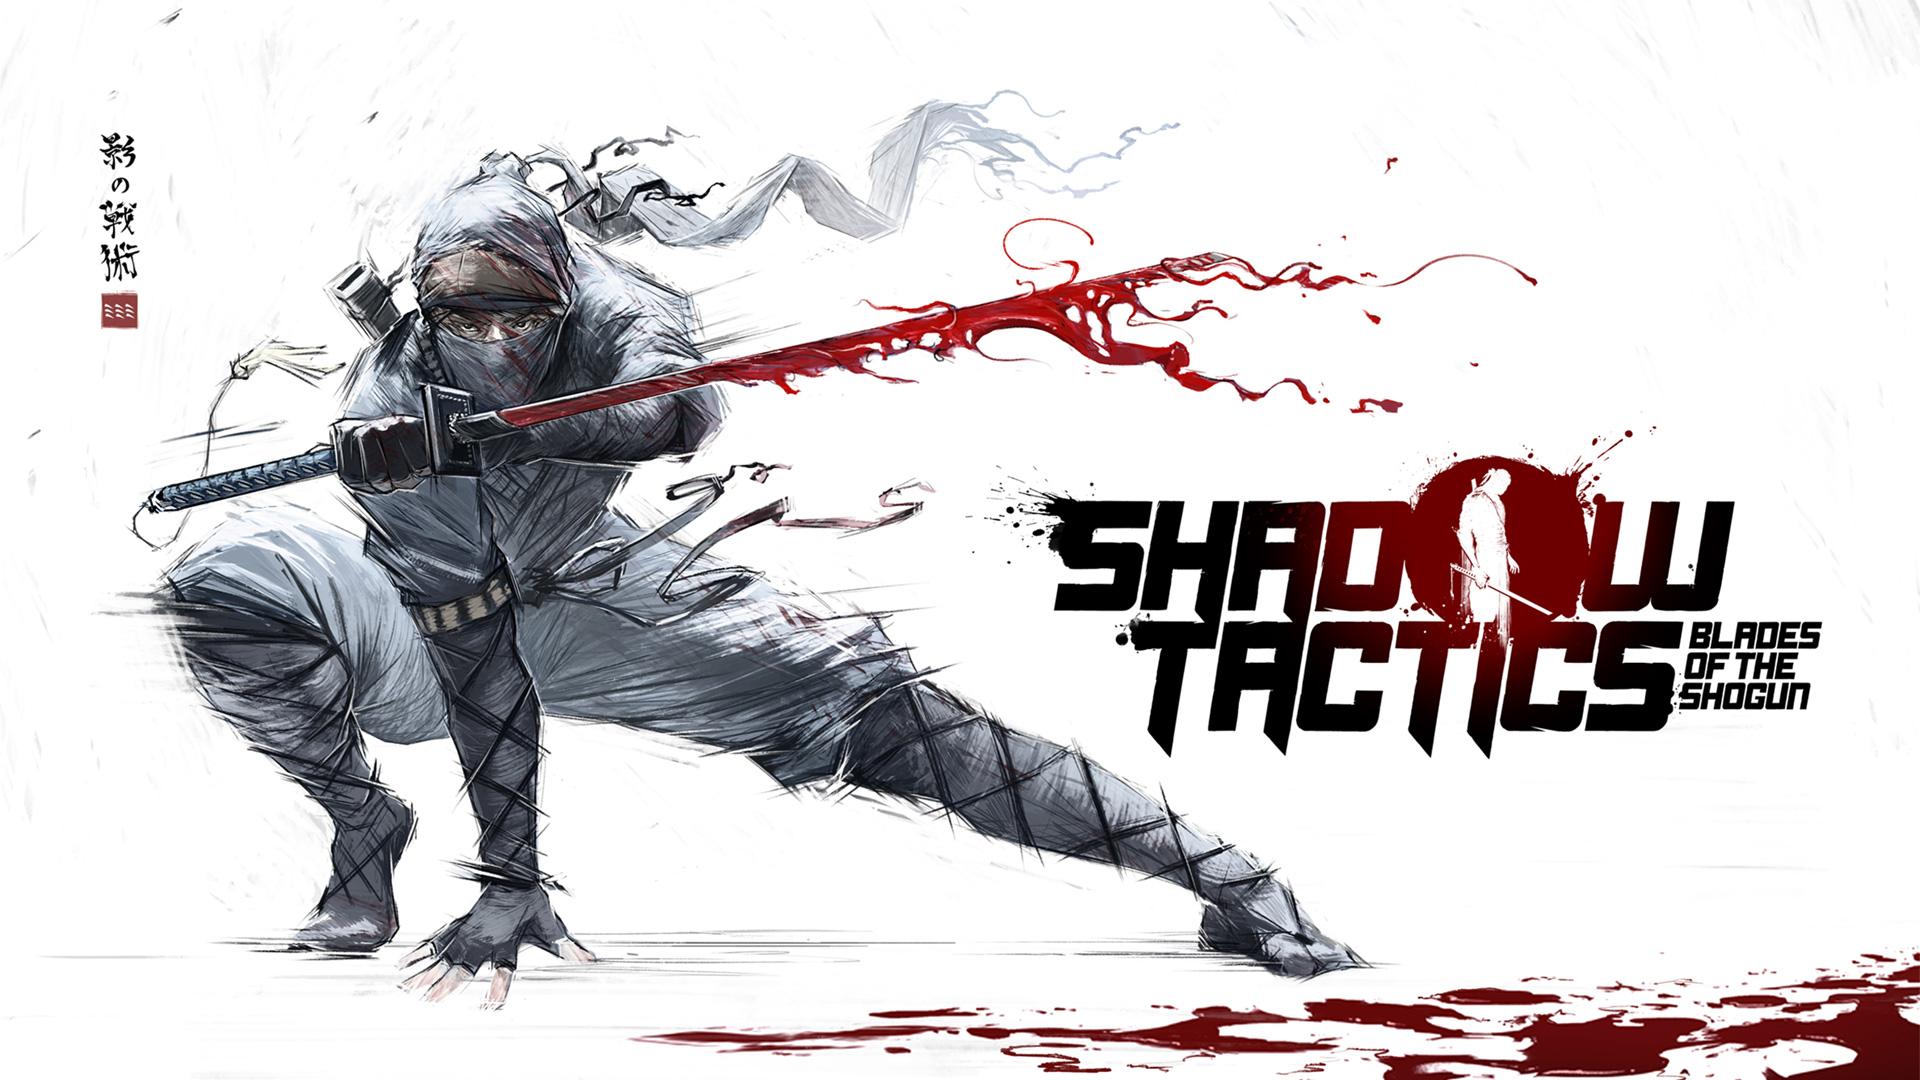 shadow tactics blades of the shogun